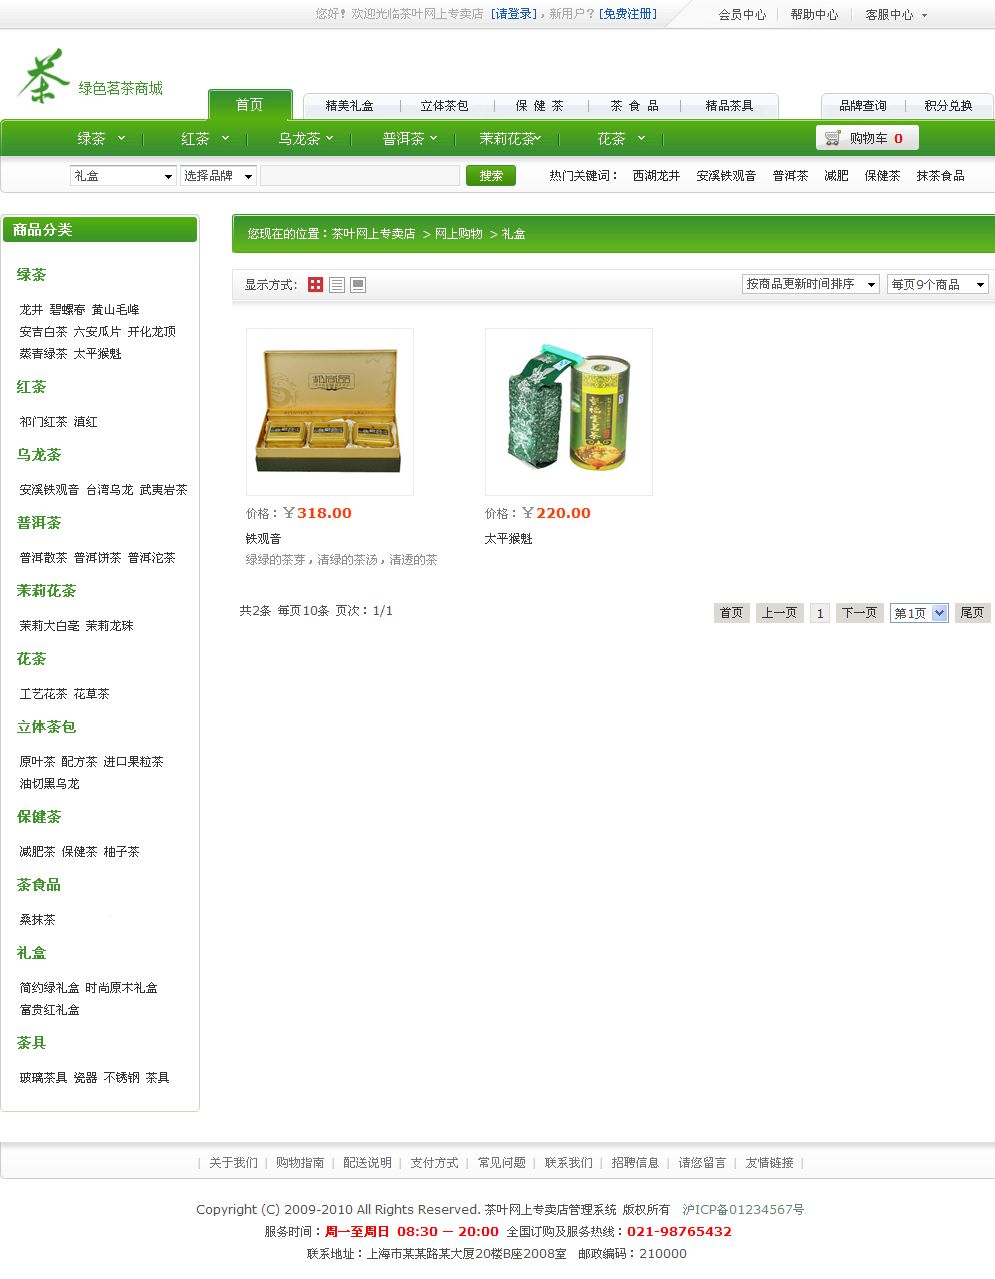 茶叶网上商城产品列表页